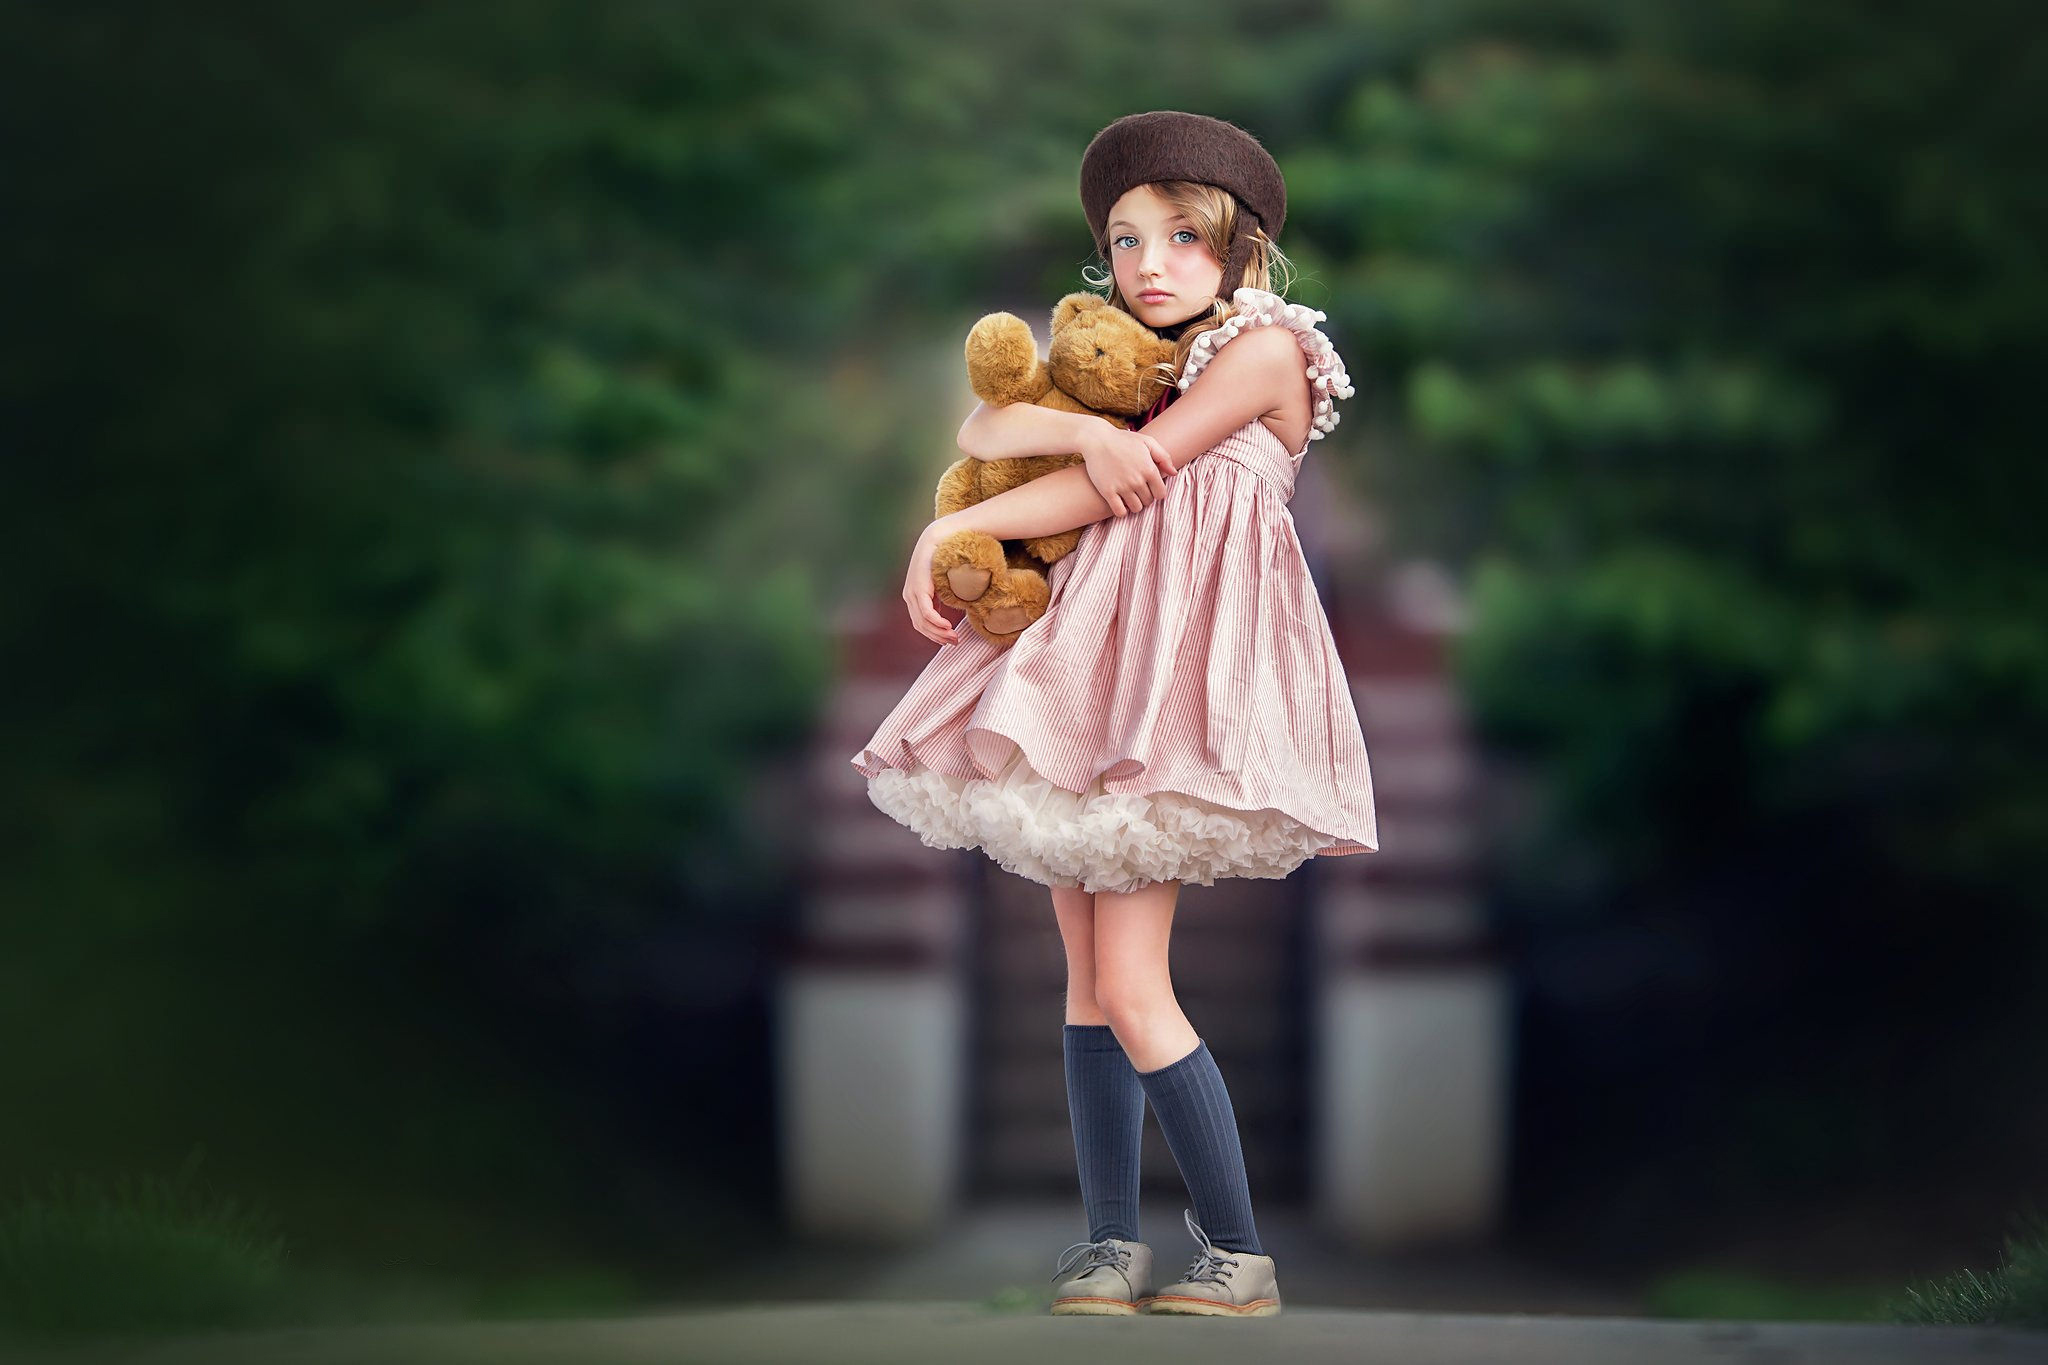 Картинка девочка с куклой. Куклы для девочек. Девочка. Девочка с куклой в руках. Маленькая девочка с куклой.